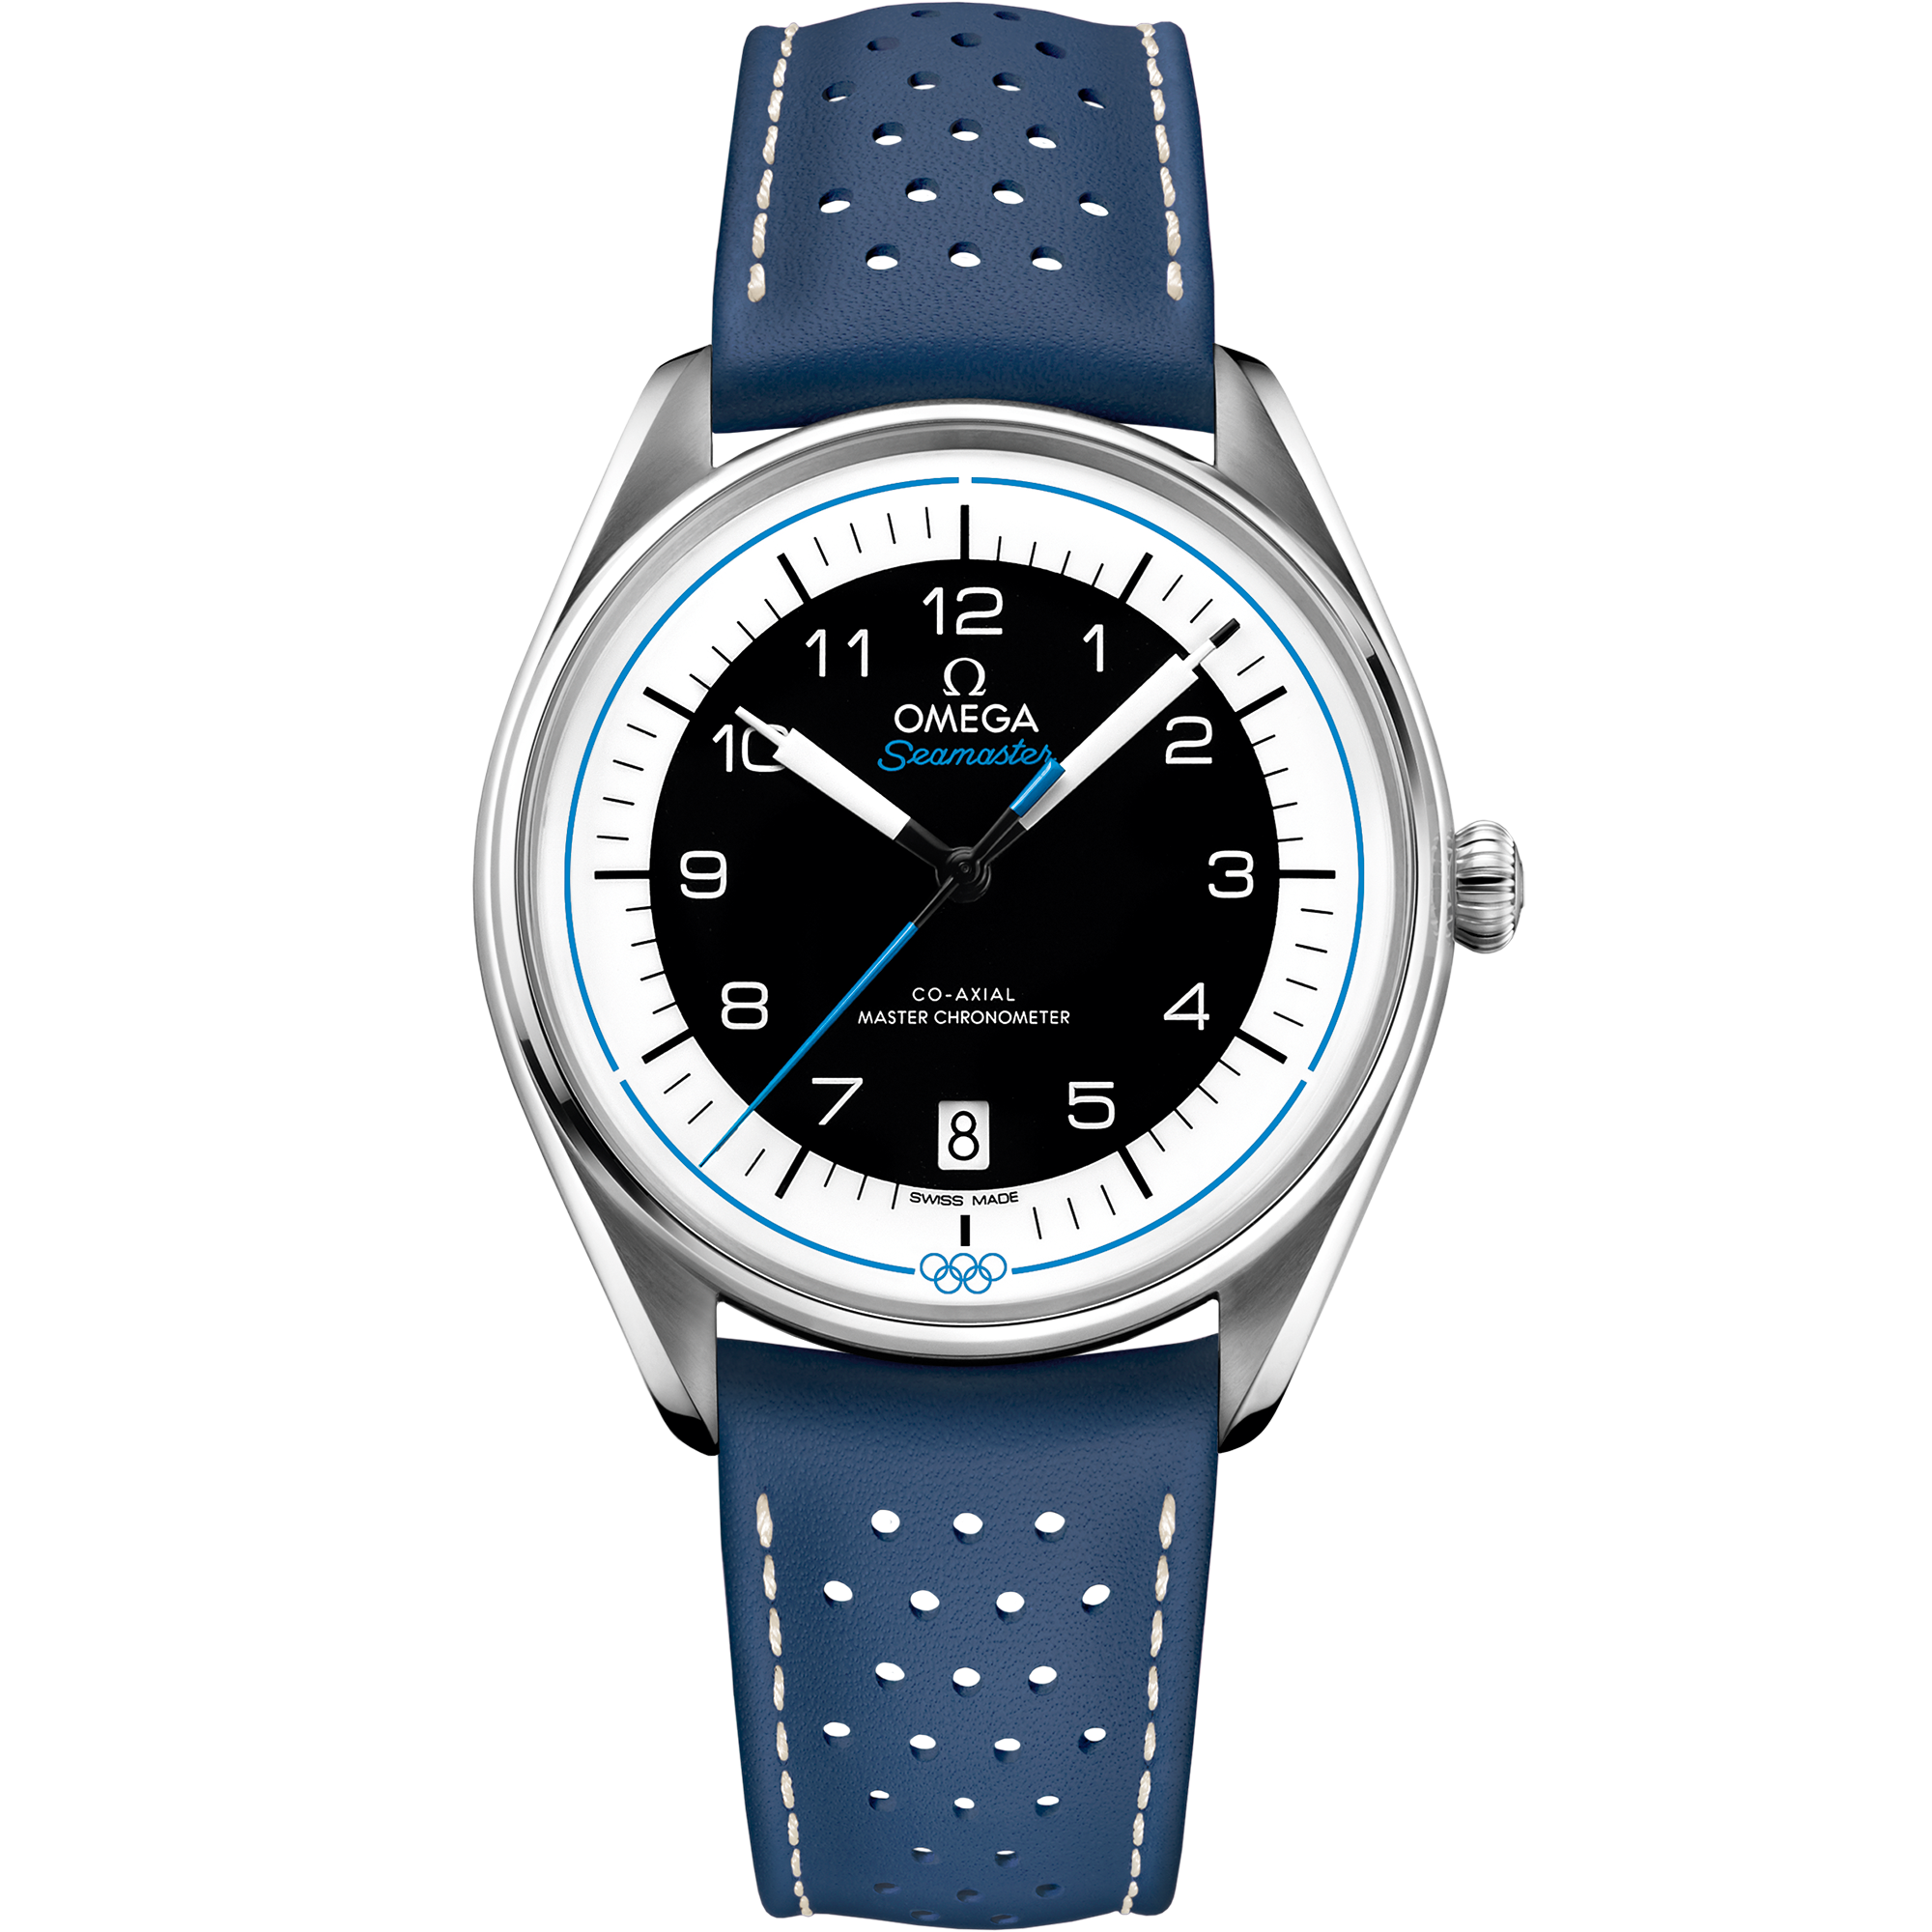 Seamaster Chronométreur Officiel des Jeux Olympiques 39,5 mm, acier sur bracelet en cuir - 522.32.40.20.01.001